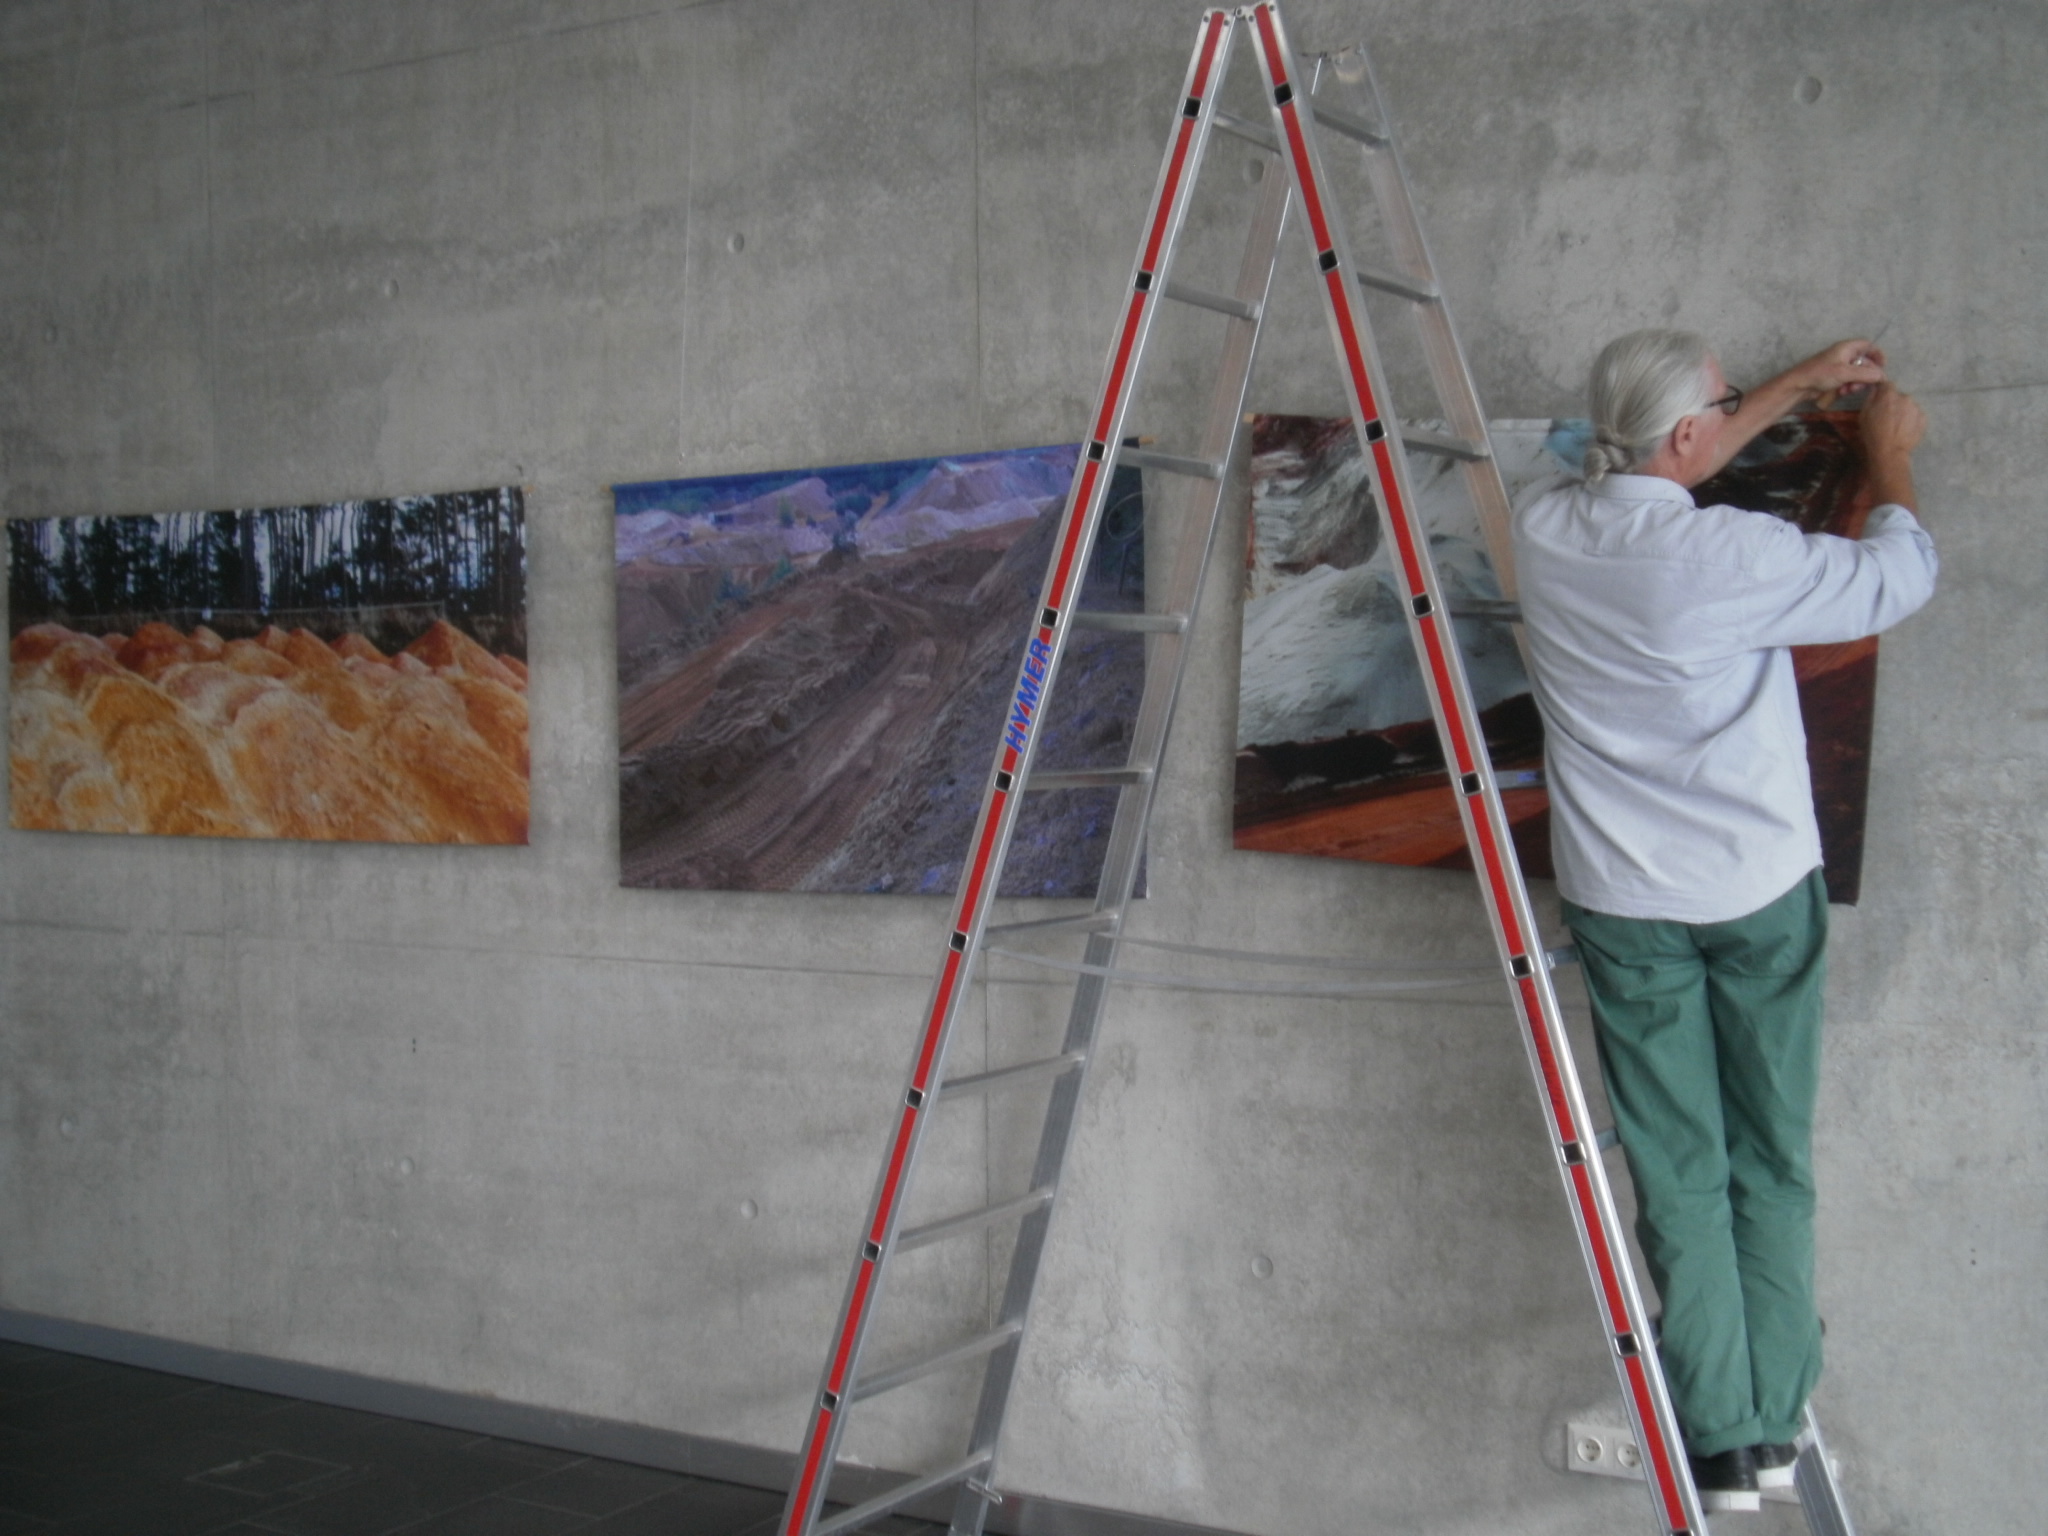 Der Aufbau der Kunstausstellung "Ahoj 19" wurde am Mittwoch im Foyer der Schwarzachtalhalle abgeschlossen. Foto: K. Stumpfi